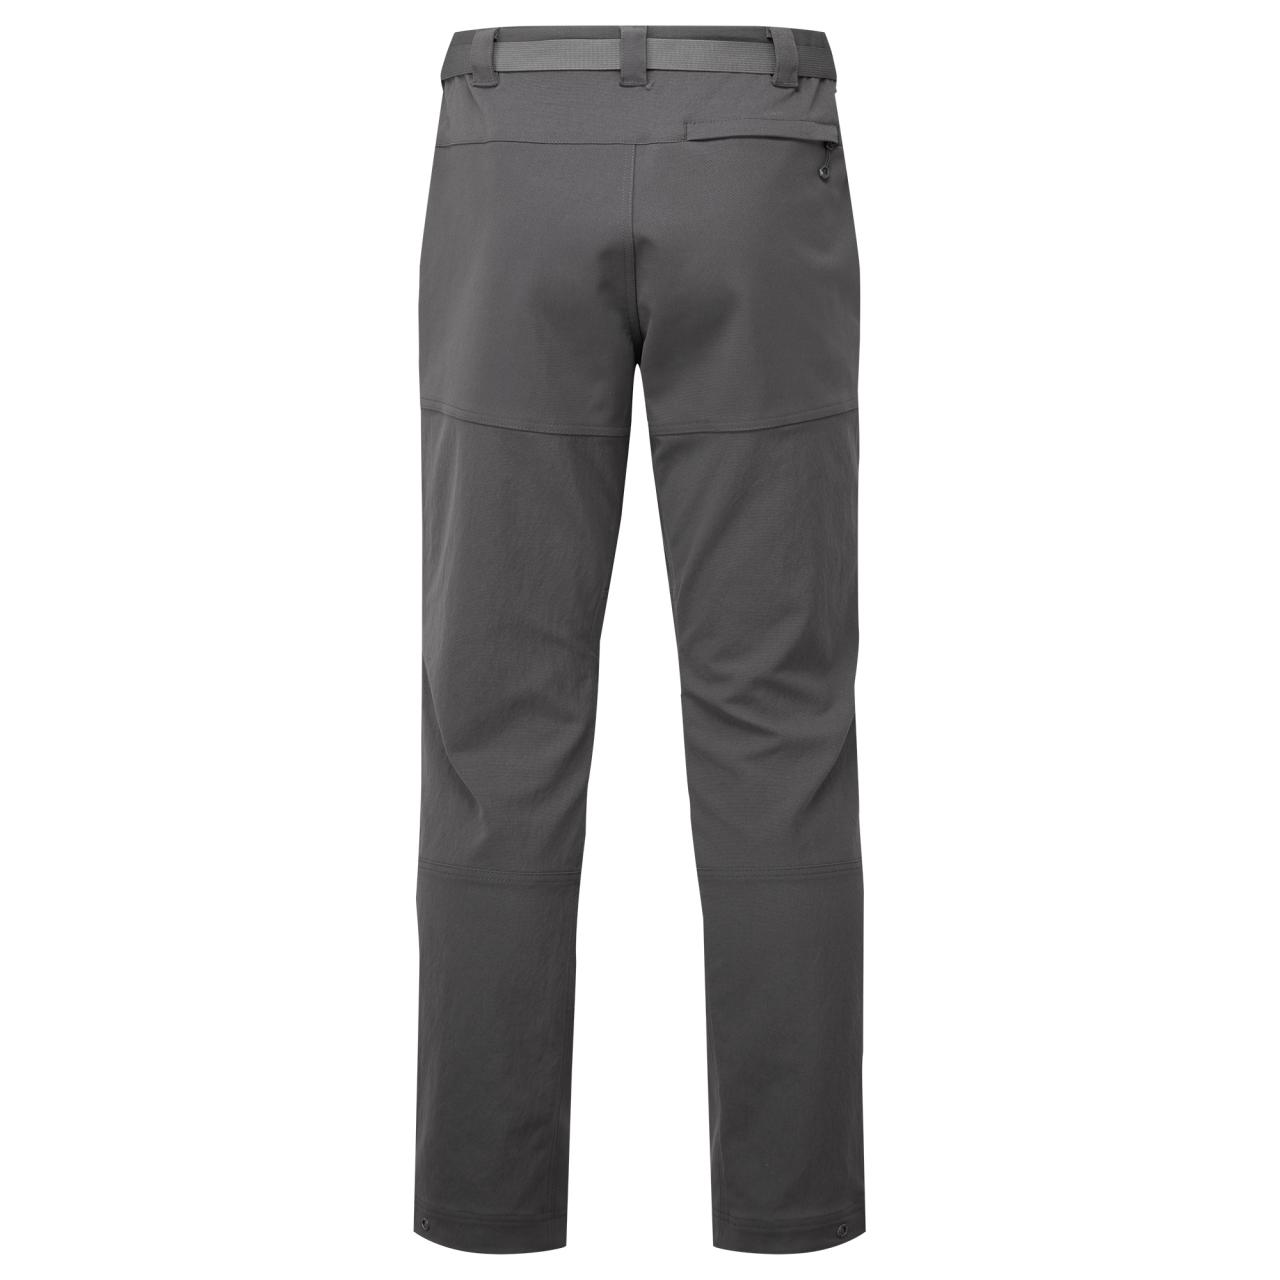 TERRA XT PANTS REG LEG-MIDNIGHT GREY-36/XL pánské kalhoty tmavě šedé